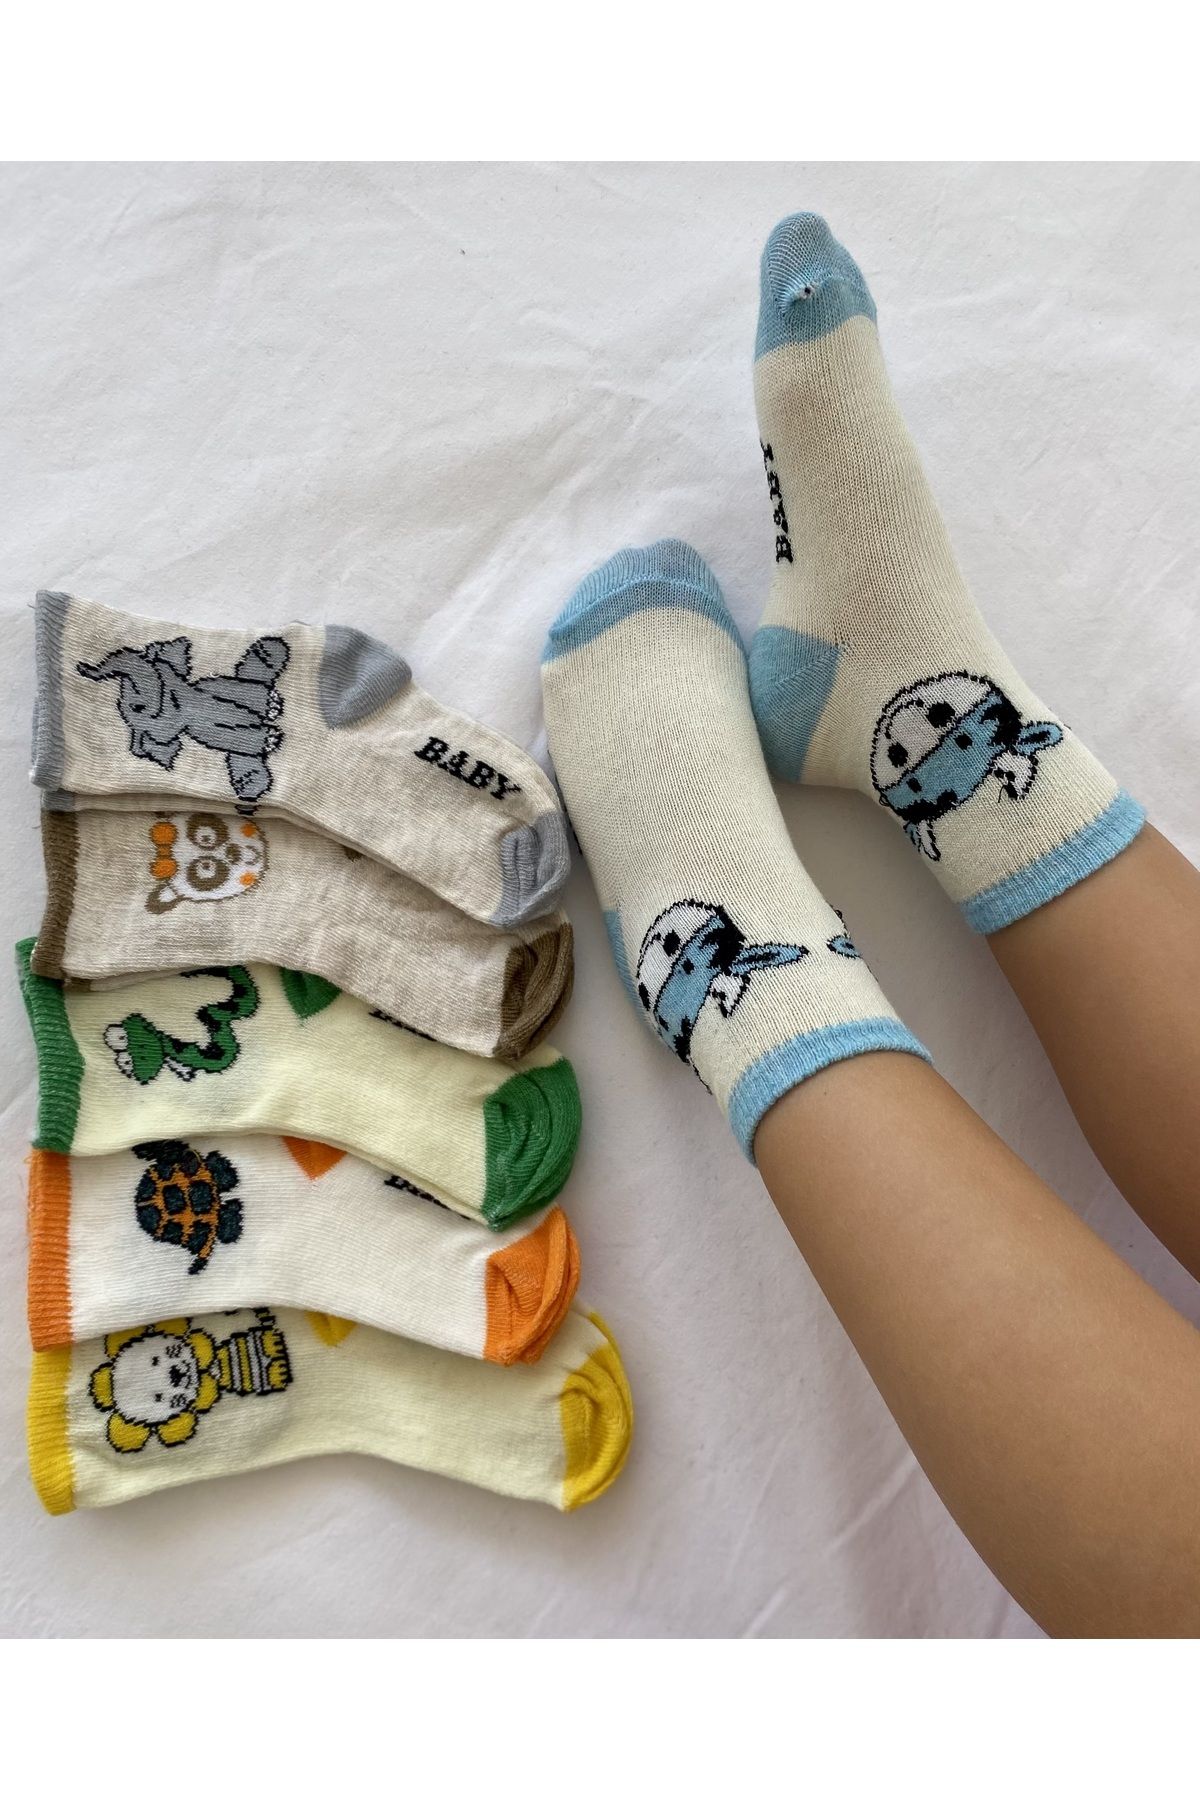 myDea 6’lı Desenli Bebek Çorabı Sevimli Koton Bebek Çorabı